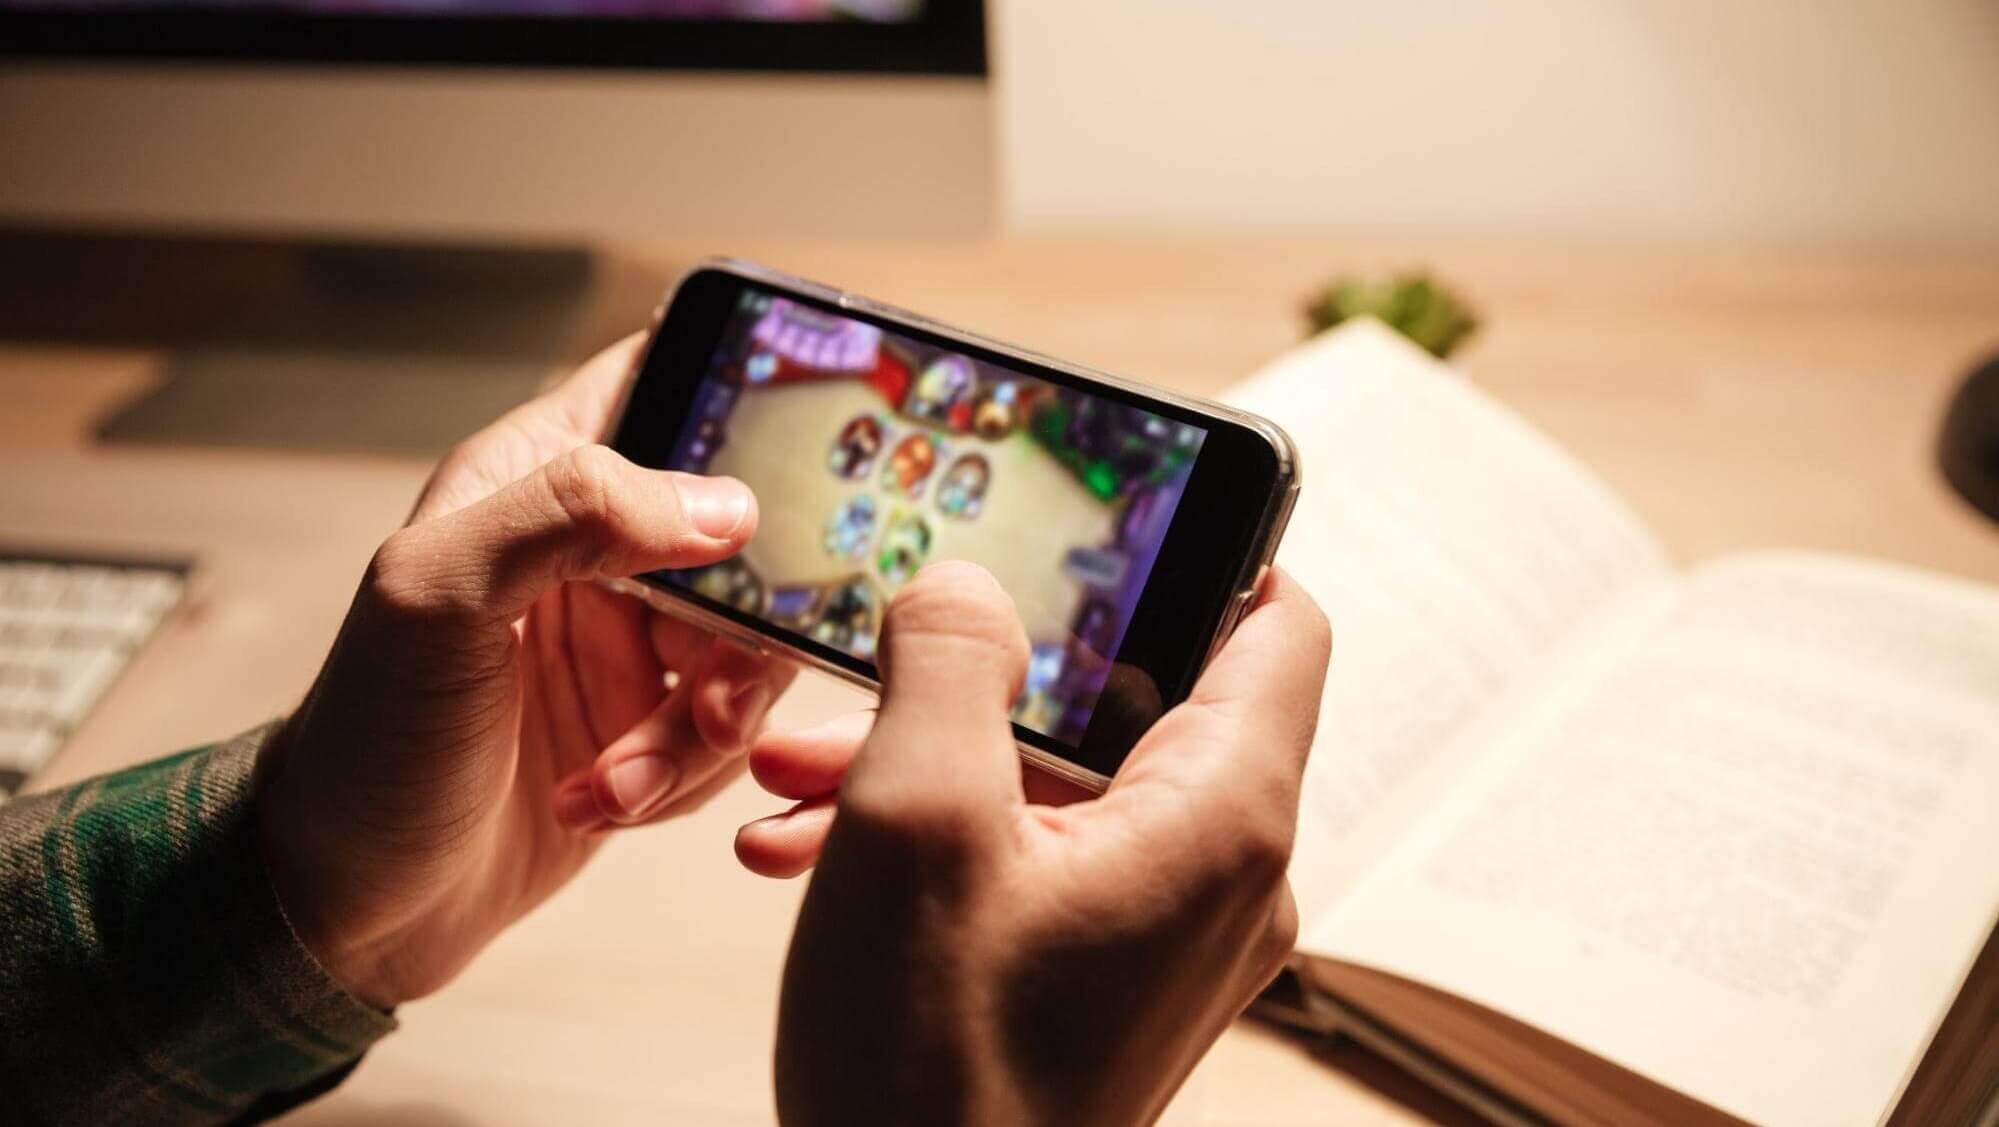 Receita de games mobile pode superar US$ 100 bi em 2020 - TecMundo